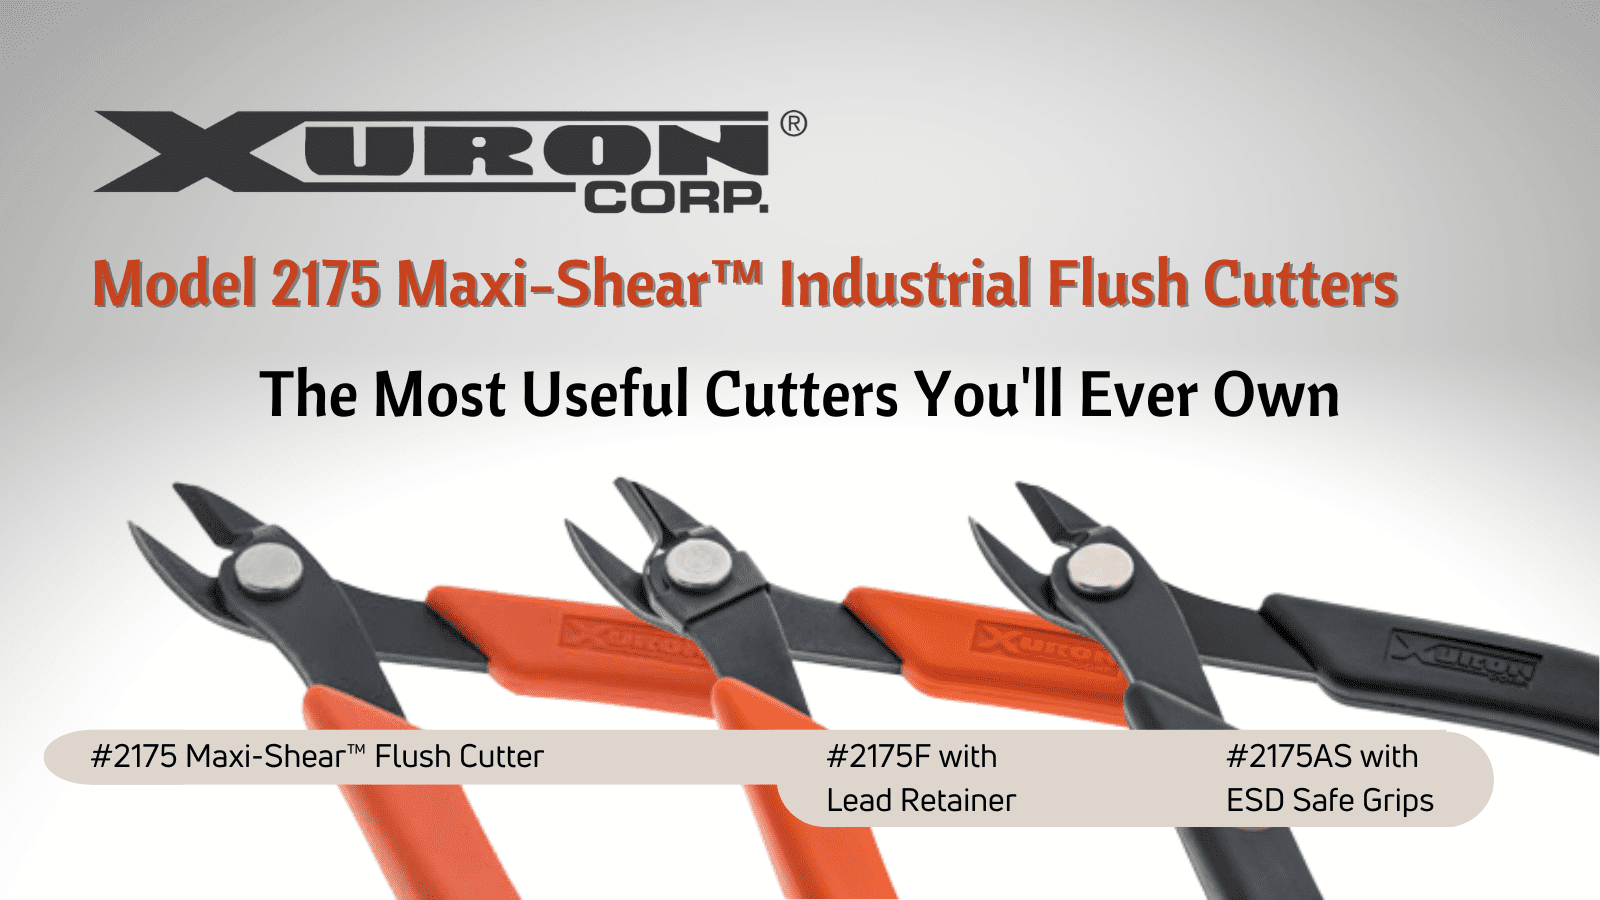 Maxi- Shear Flush Wire Cutter